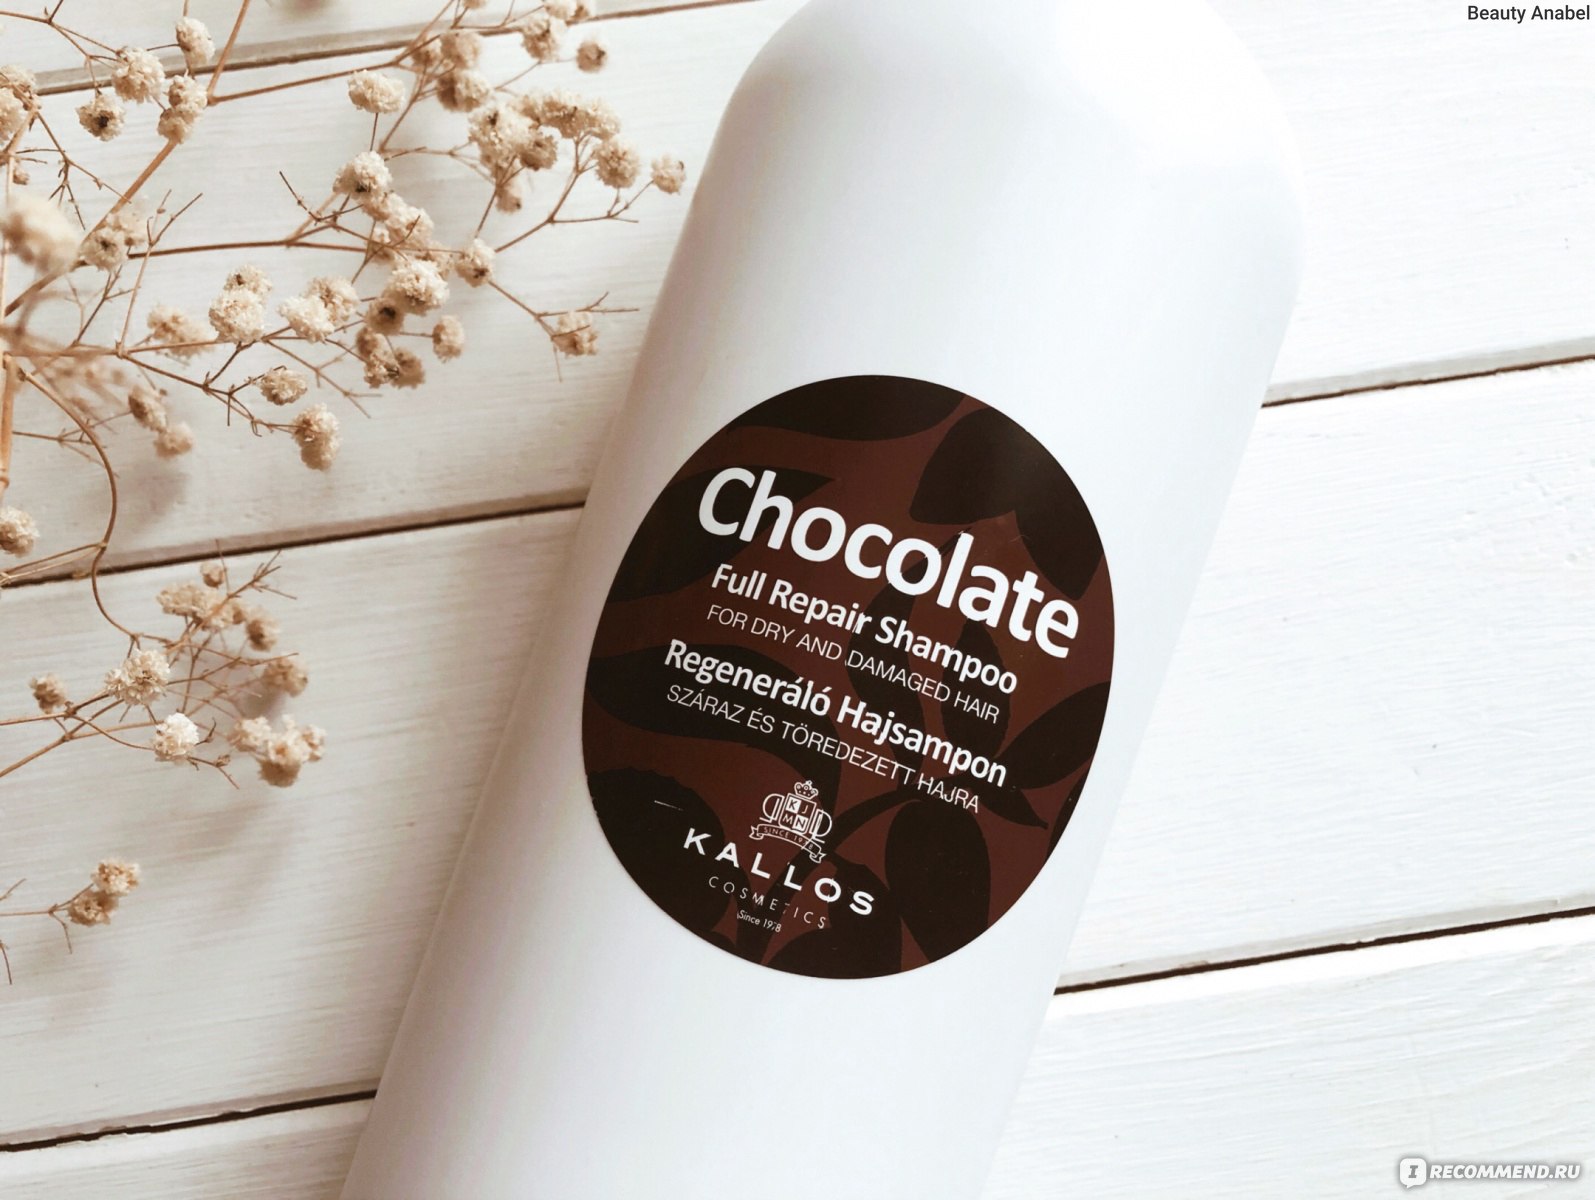 Шампунь Kallos cosmetics CHOCOLATE full repair shampoo для СУХИХ, ПОВРЕЖДЕННЫХ волос 1 л